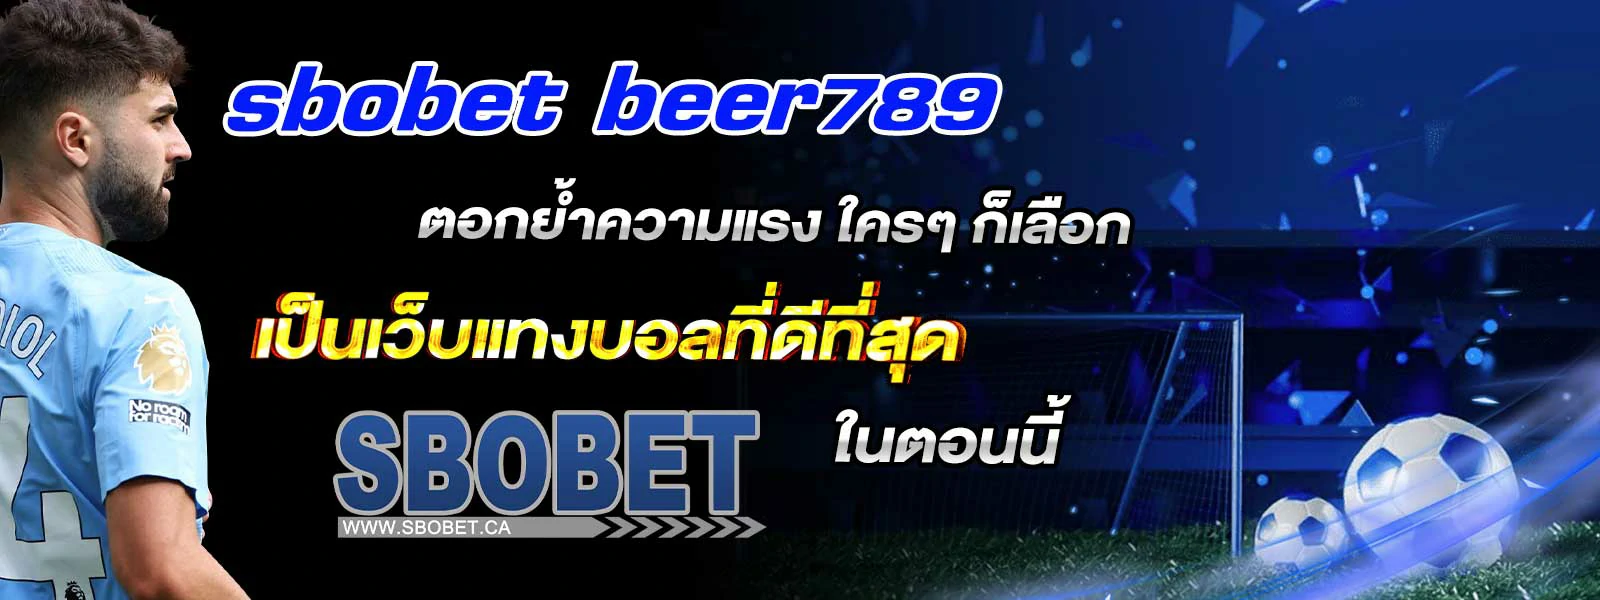 sbobet beer789 ตอกย้ำความแรง